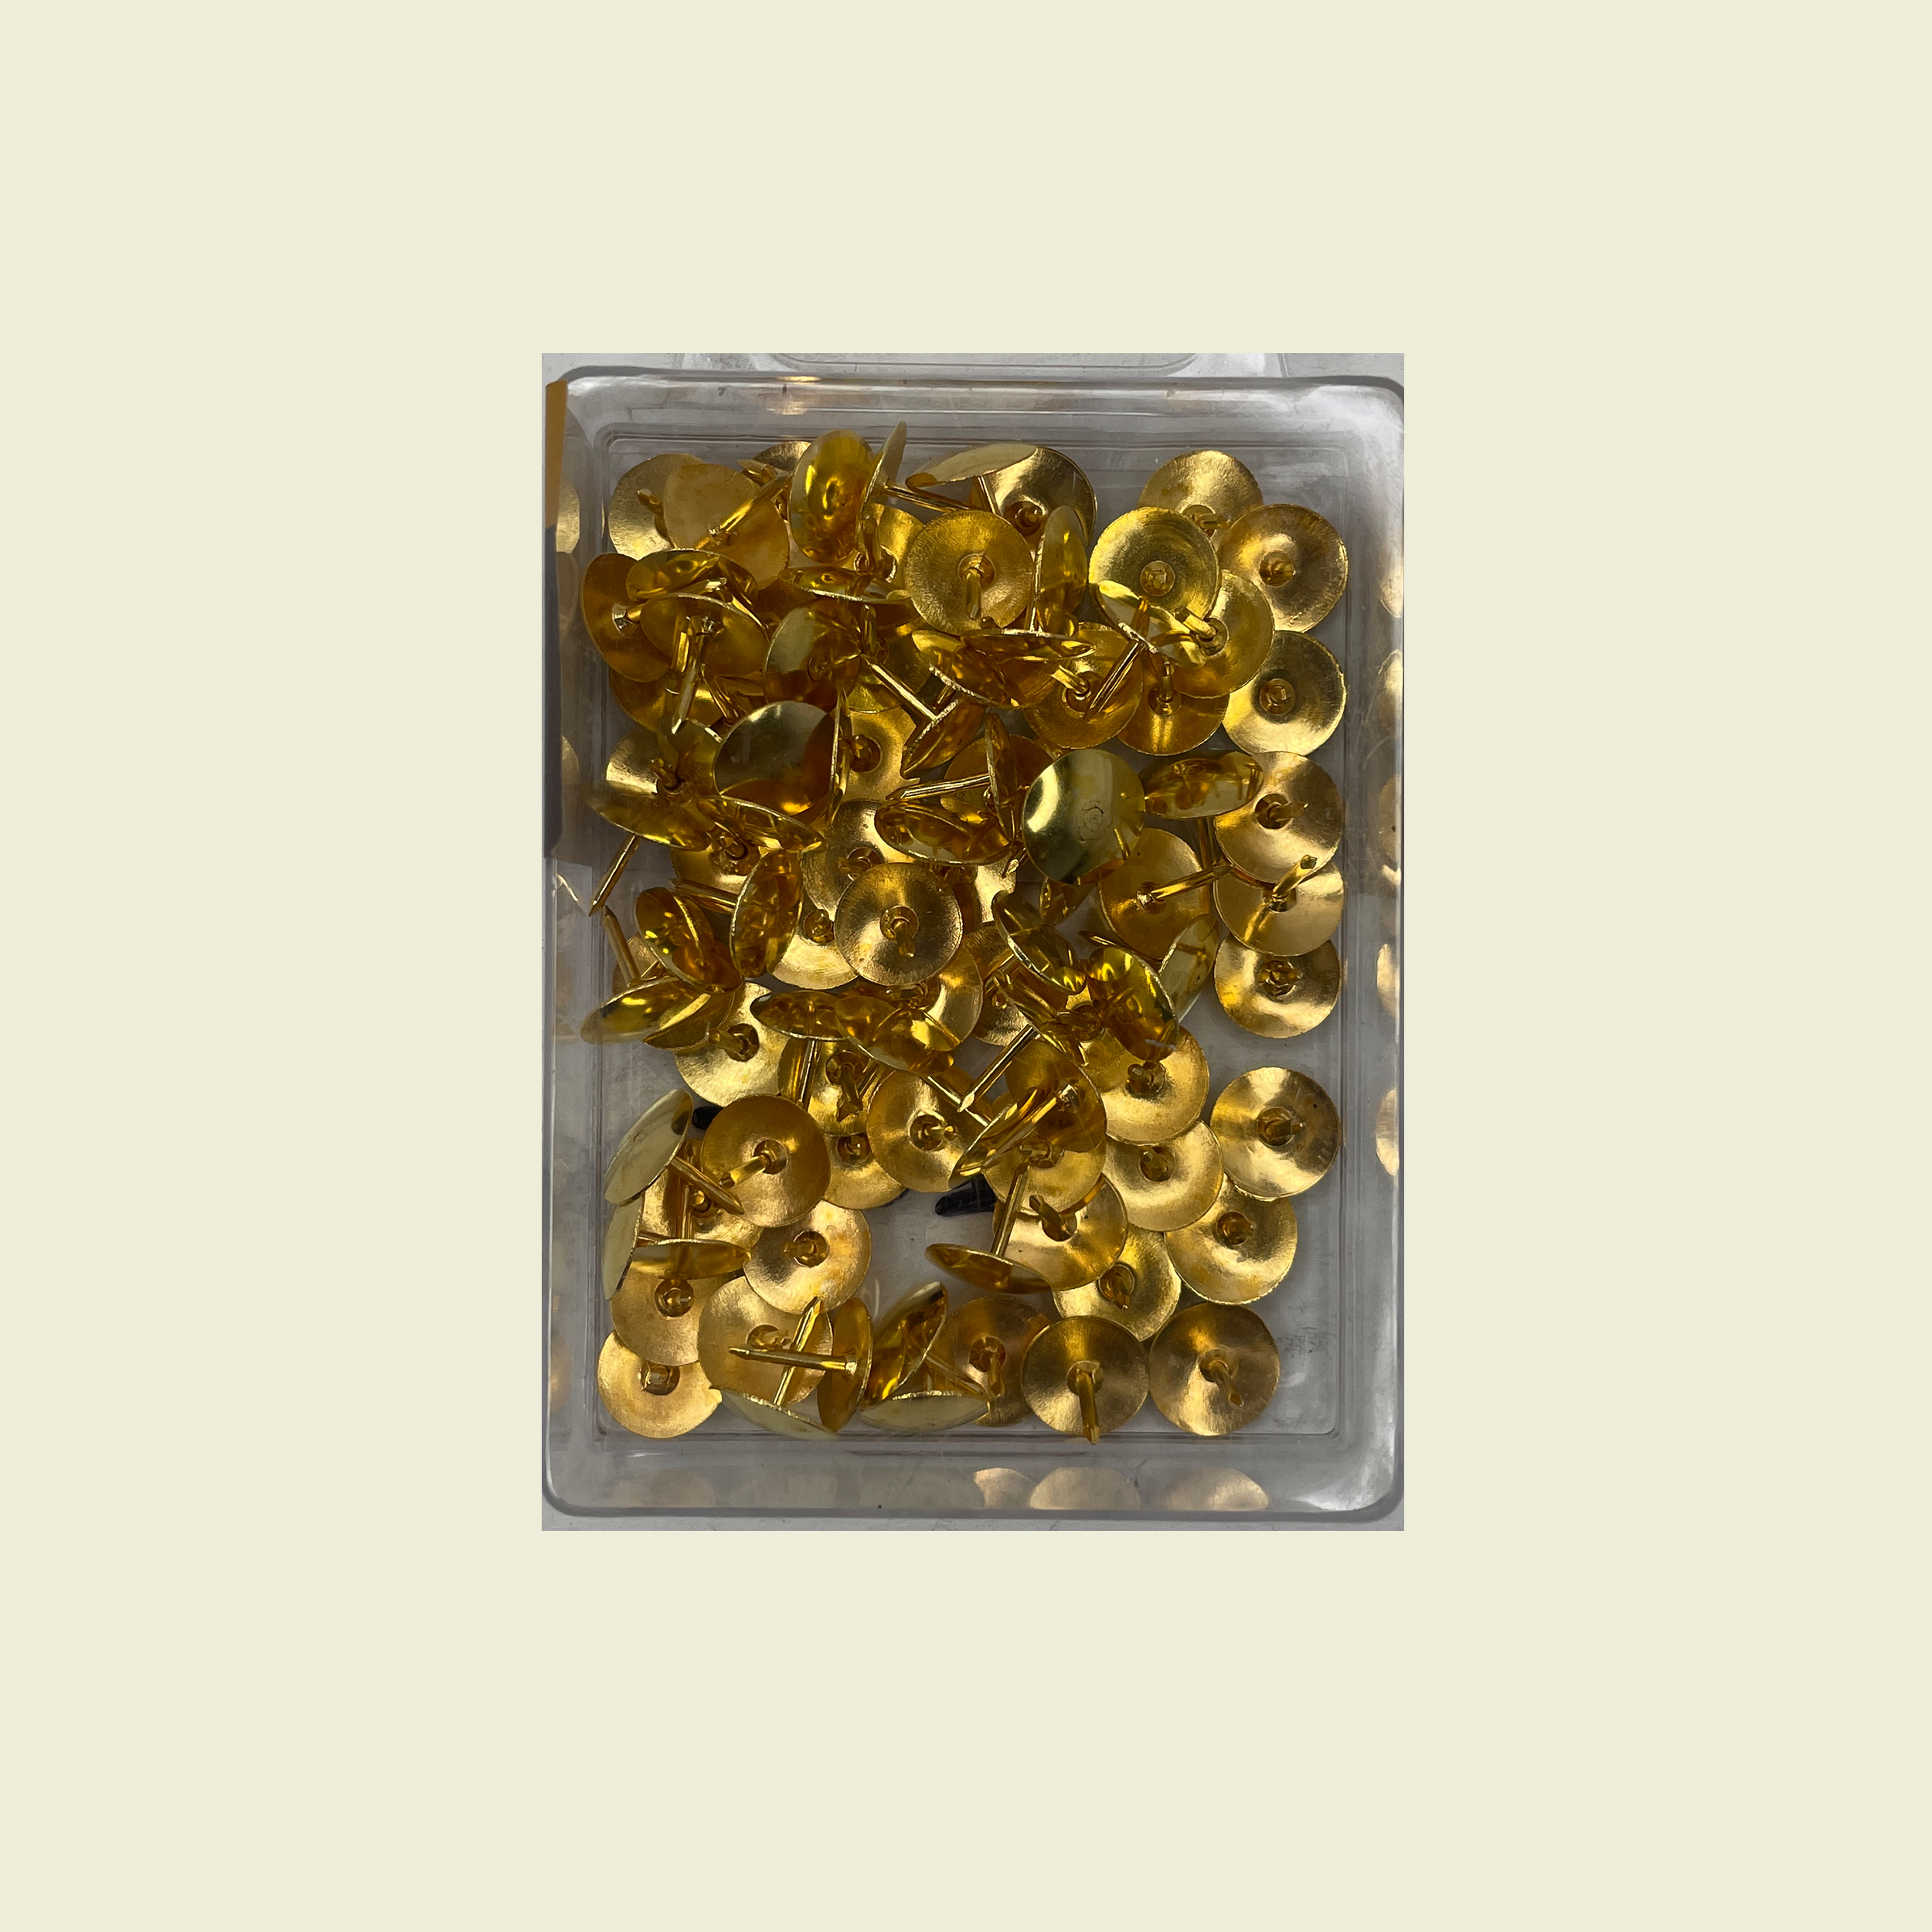 Gold Thumb Tacks 100pcs • Samaroo's Materials & General LTD